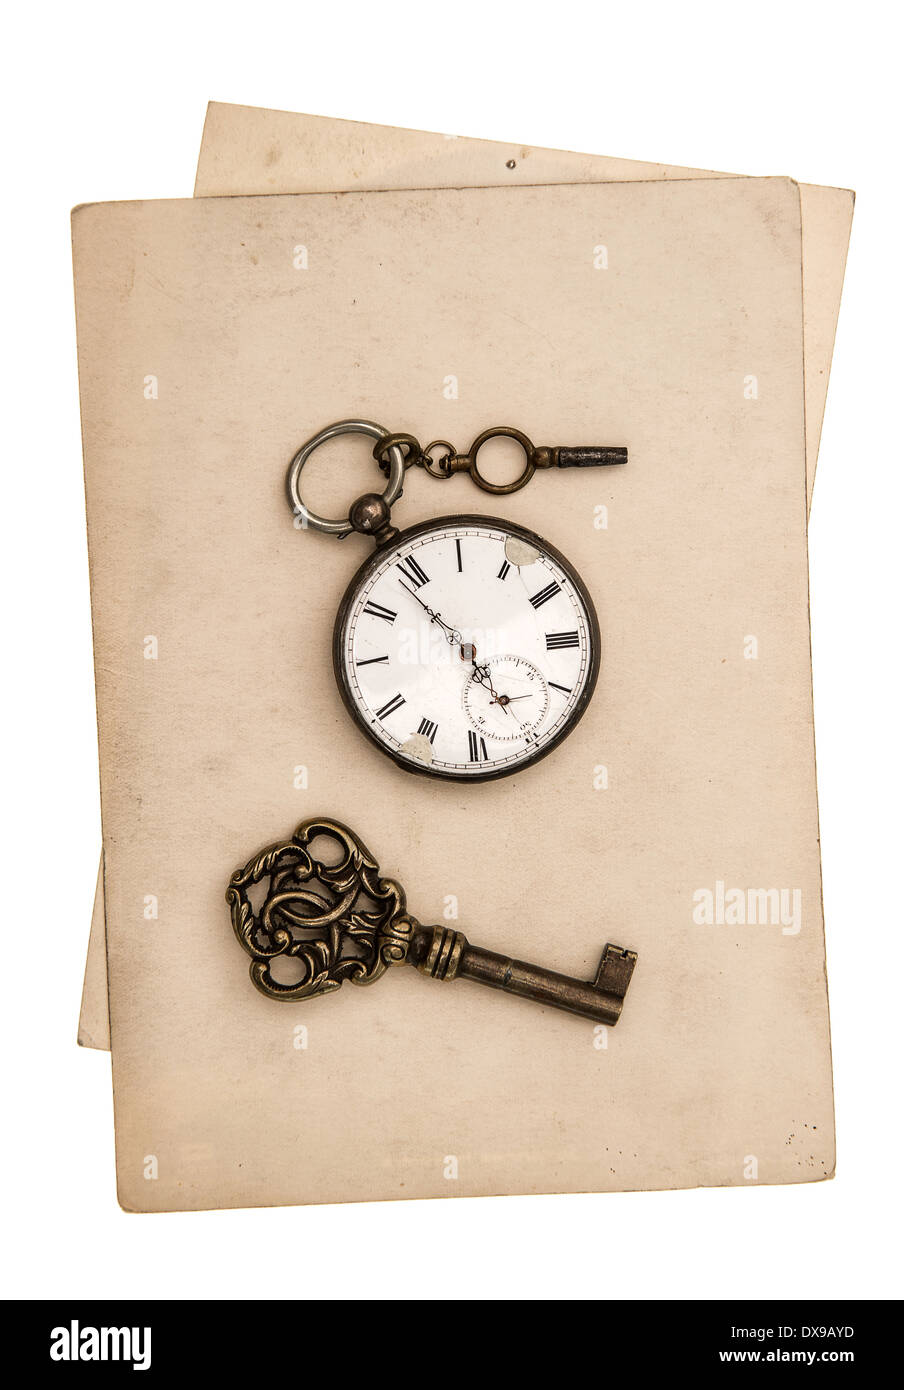 Antique grungy fogli di carta con orologio e chiave isolati su sfondo bianco Foto Stock